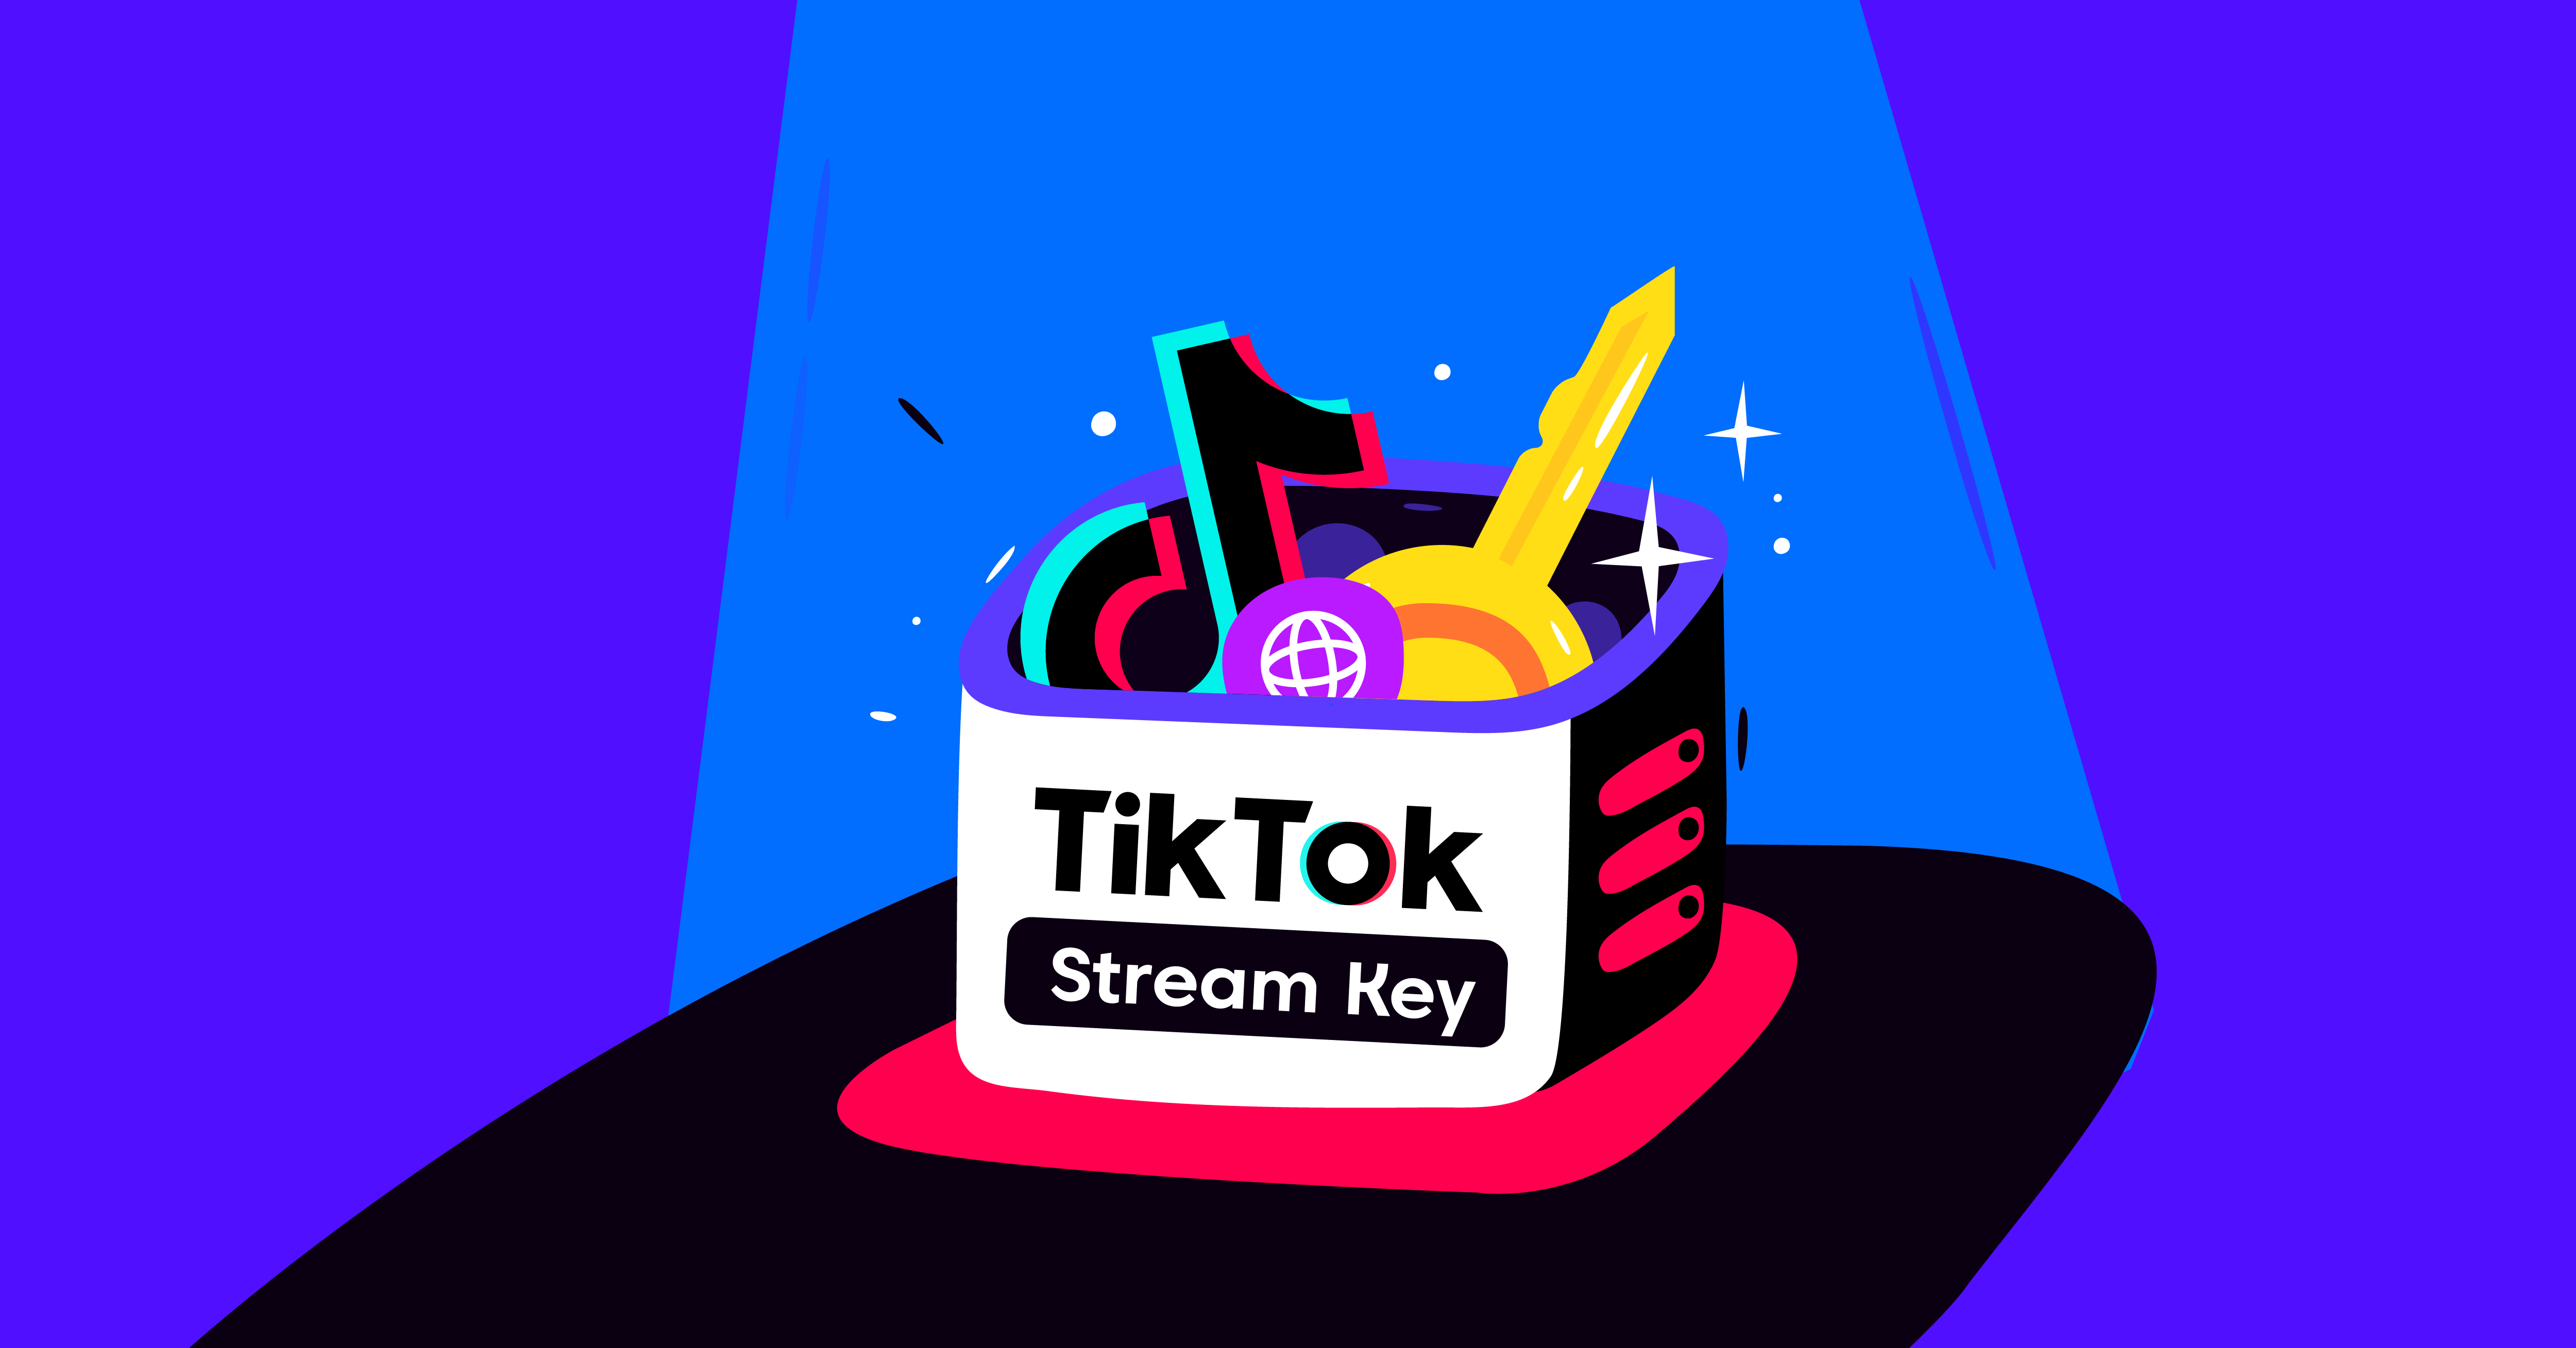 How to Get a TikTok Stream Key?